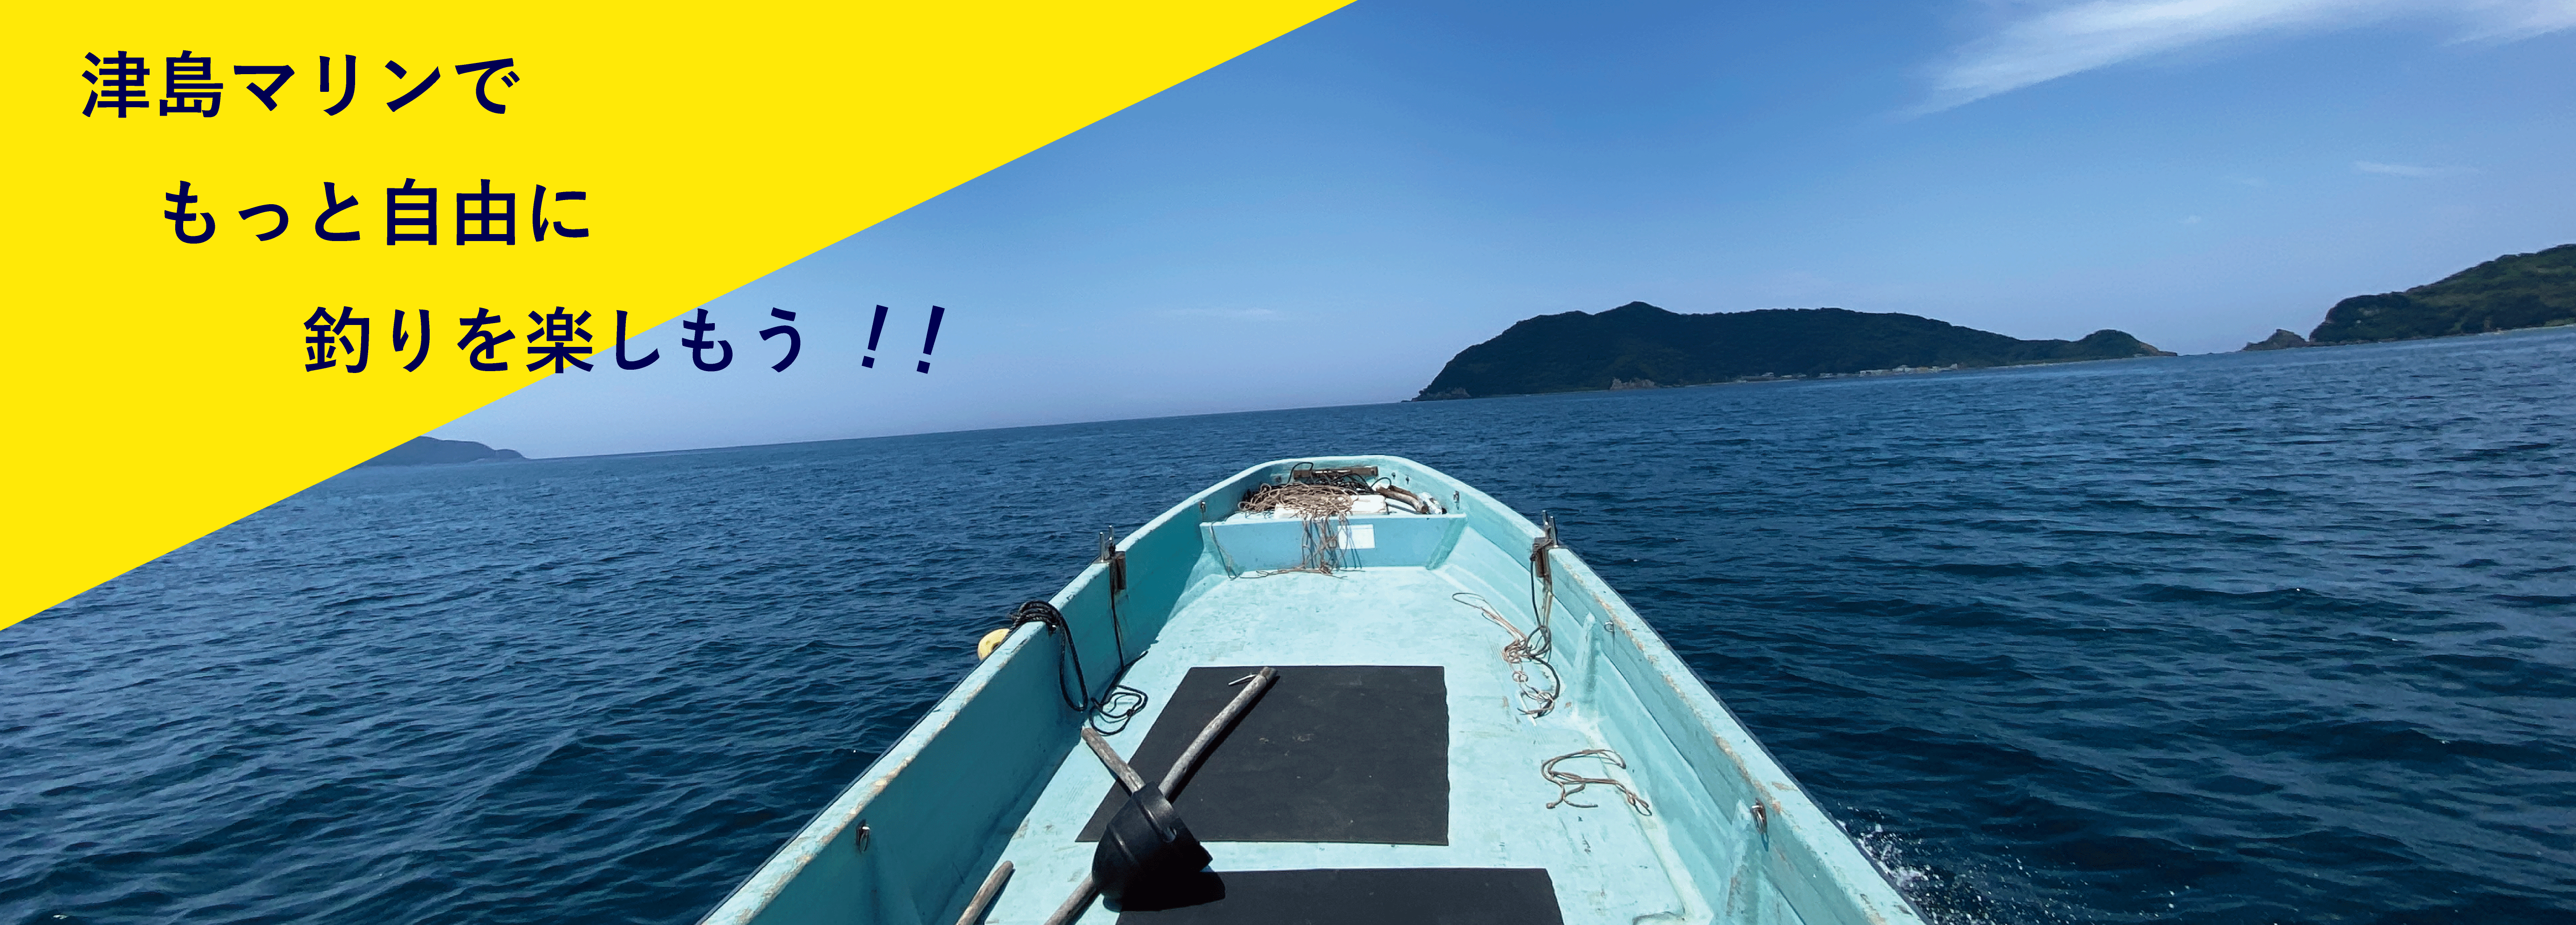 津島マリンでレンタルボートを借りて釣りを楽しむ